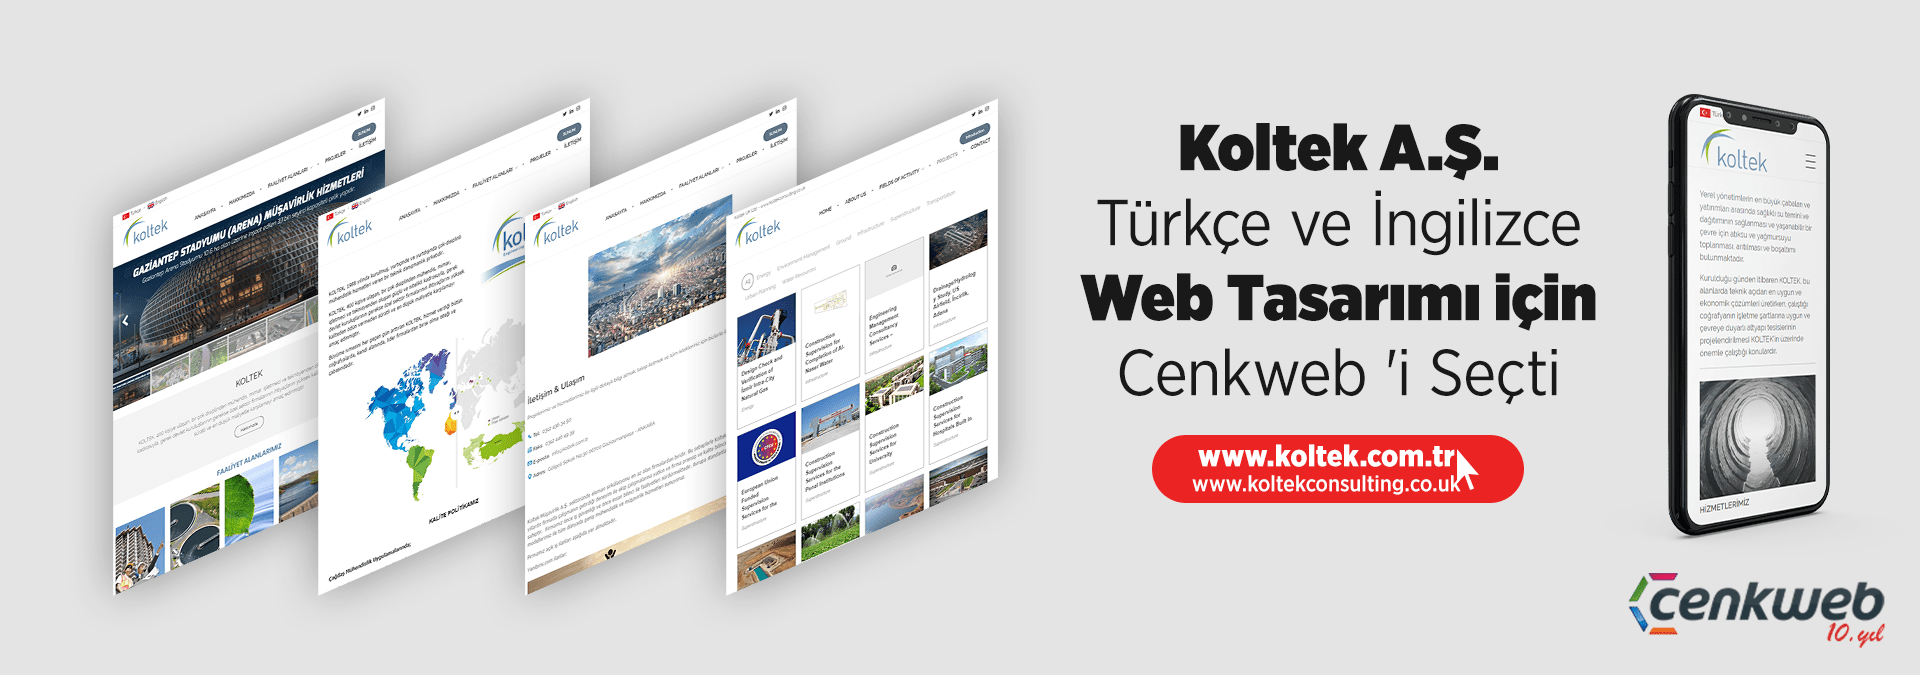 Ankara Web Tasarımı - Koltek